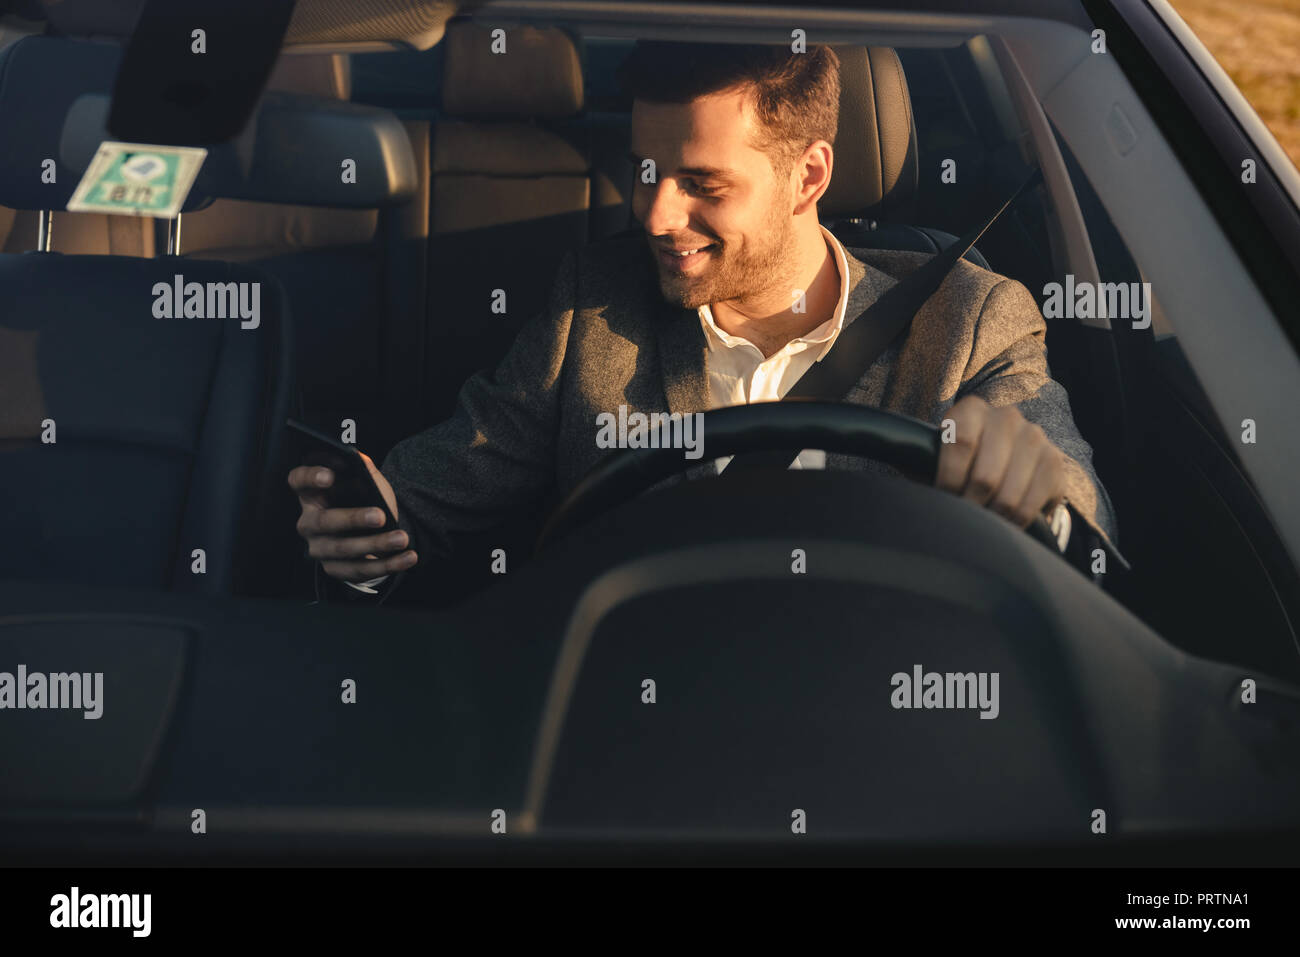 Vue avant du smiling bussinesman litigieux au volant de sa voiture, à l'aide de mobile phone Banque D'Images